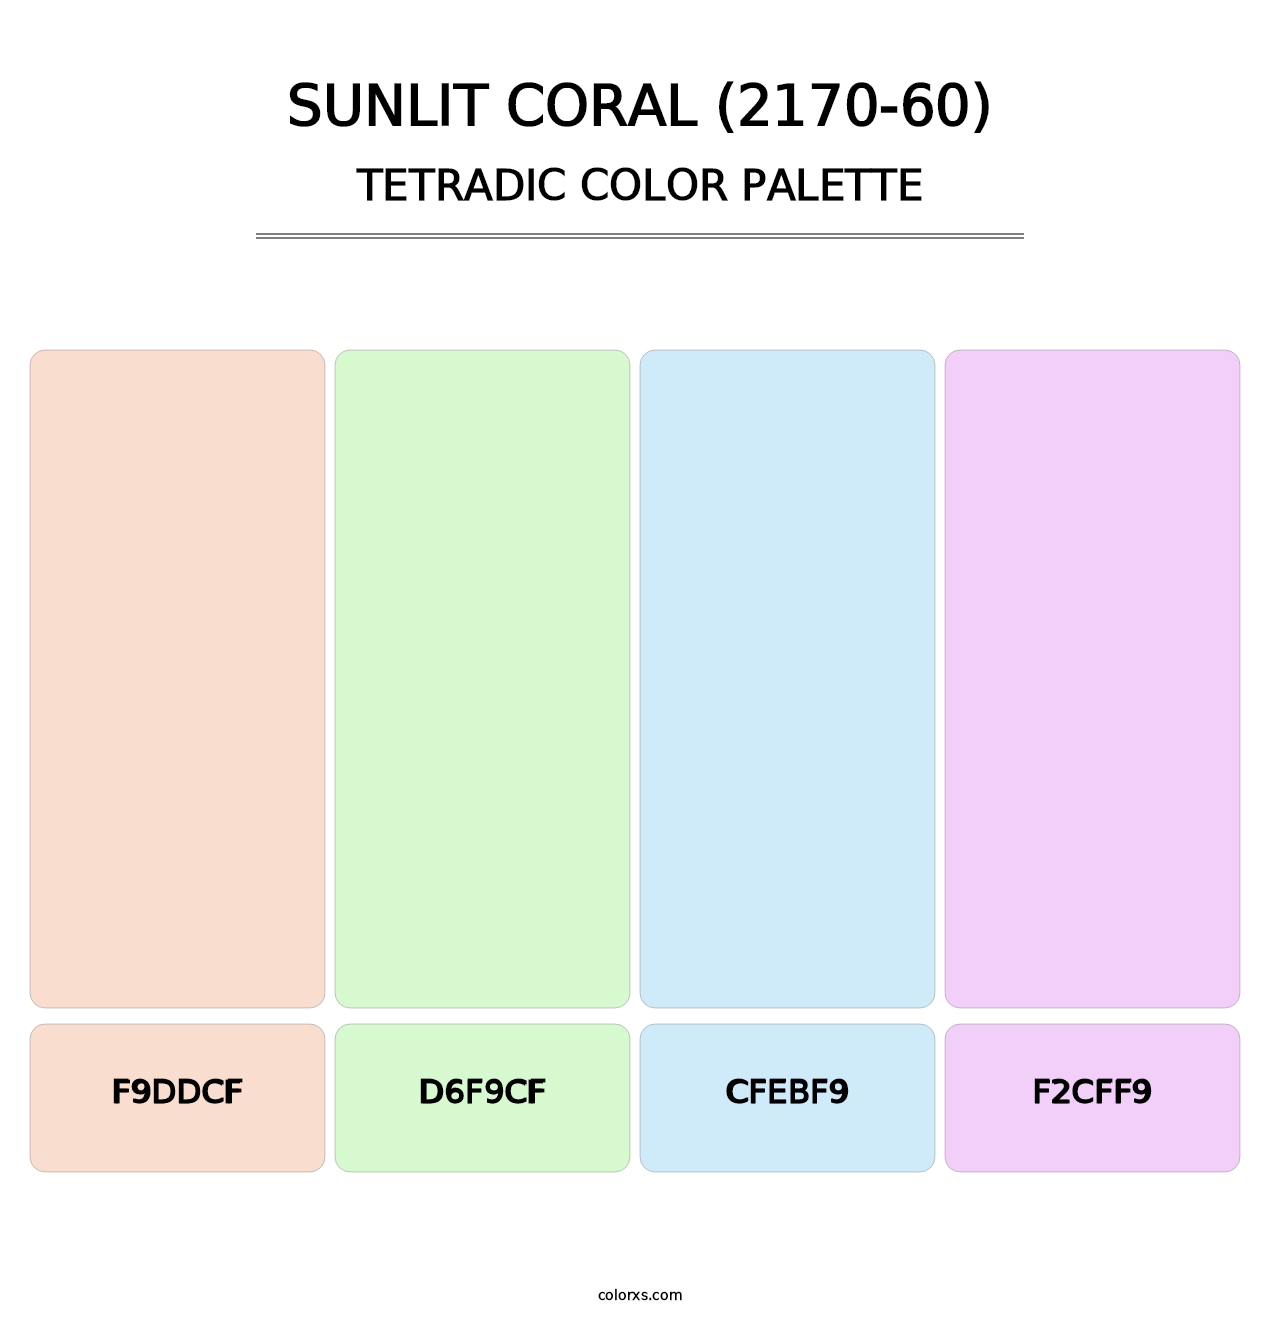 Sunlit Coral (2170-60) - Tetradic Color Palette